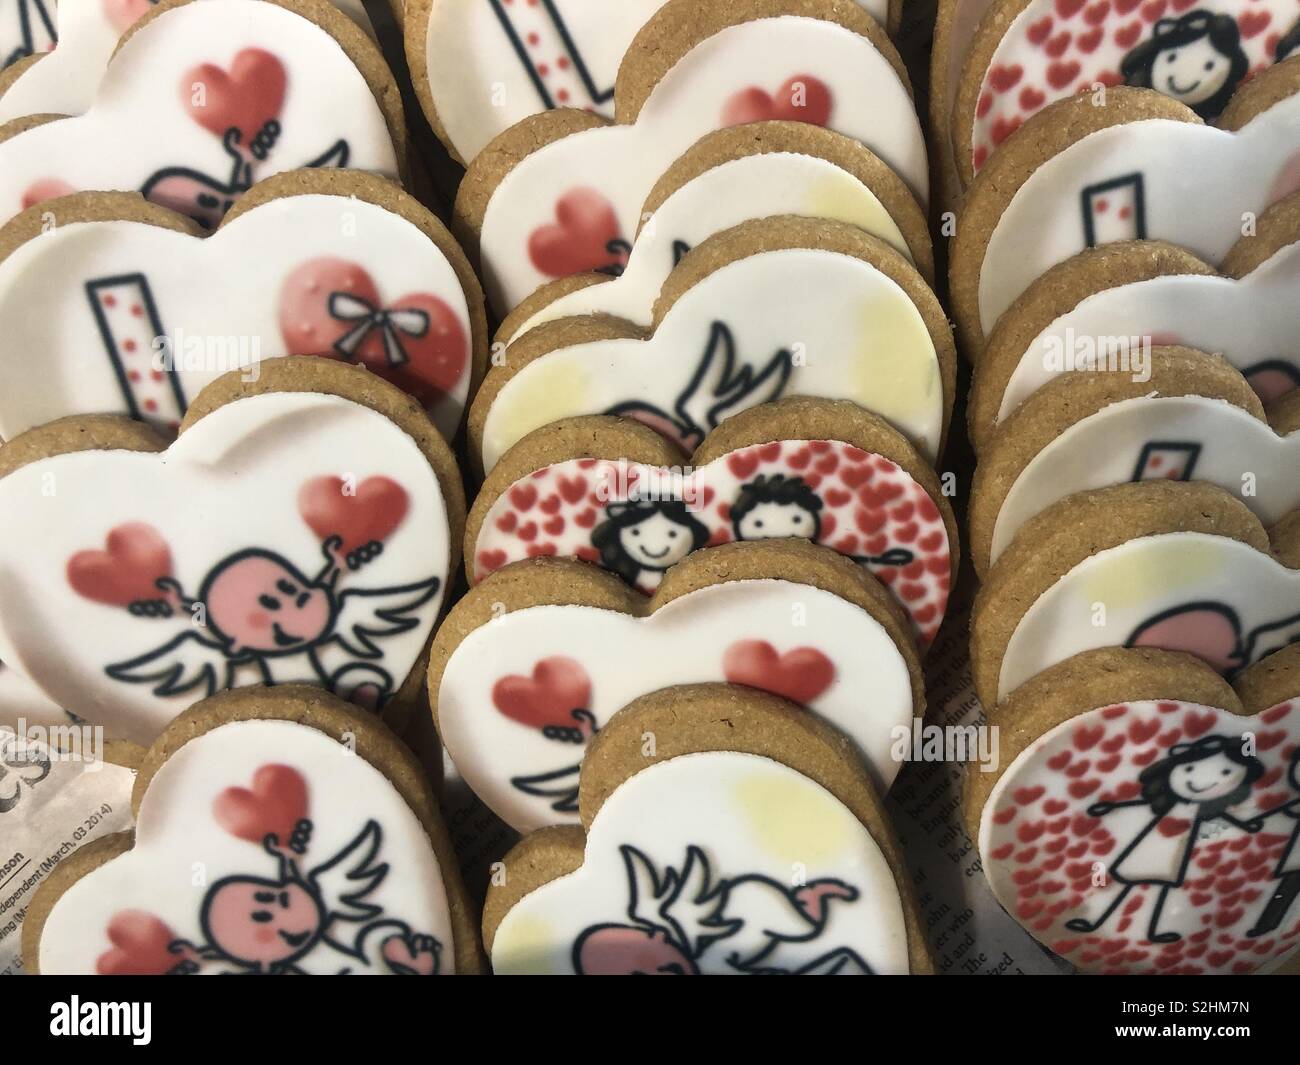 Love cookies Stock Photo